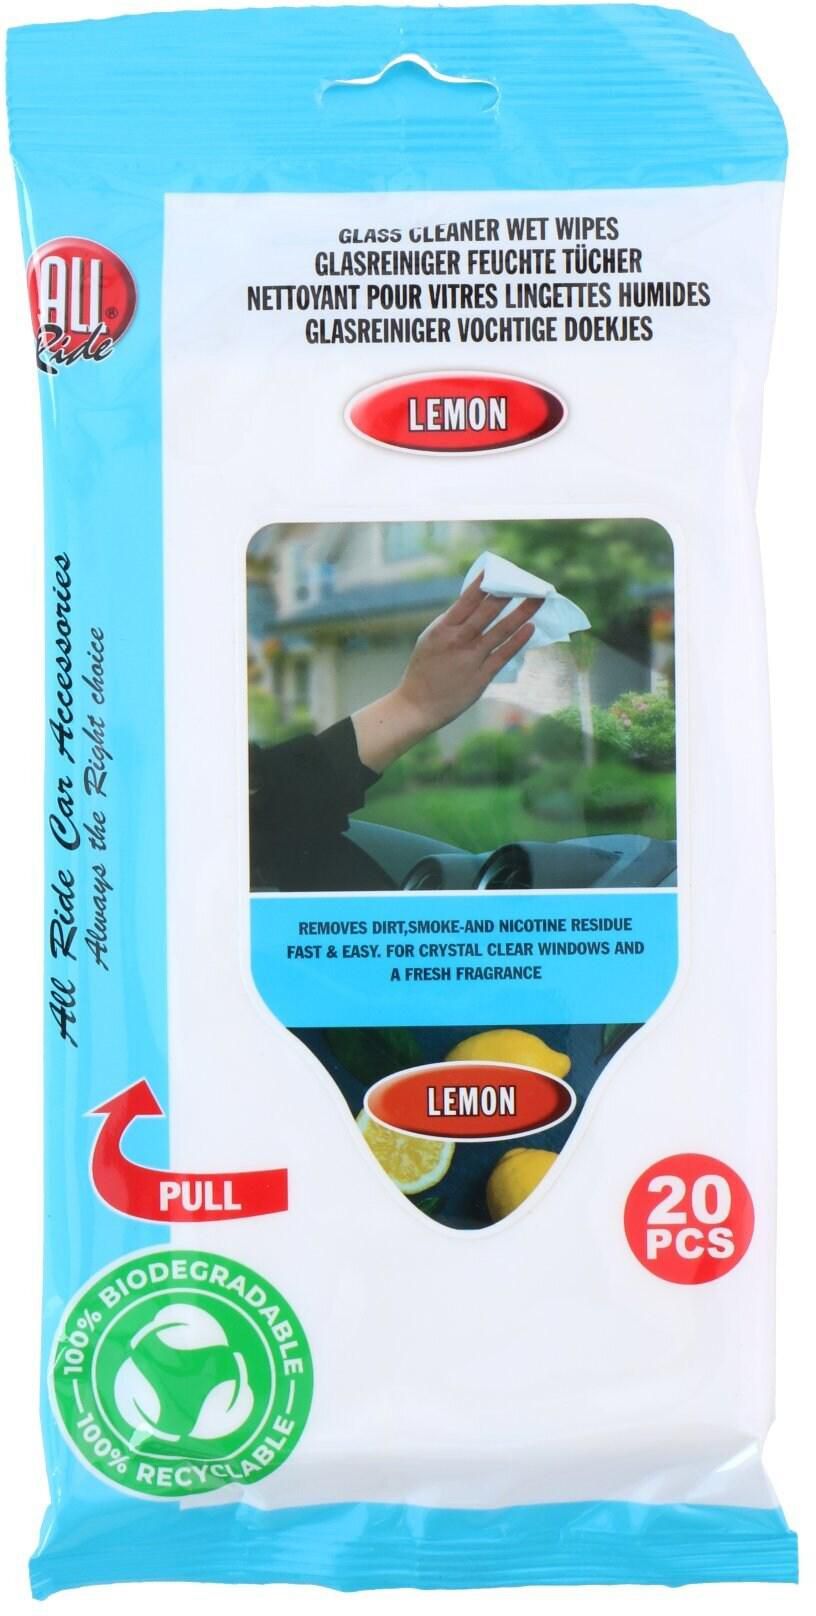 All Ride Glass Cleaner Wet Wipes Lemon 20 PCS